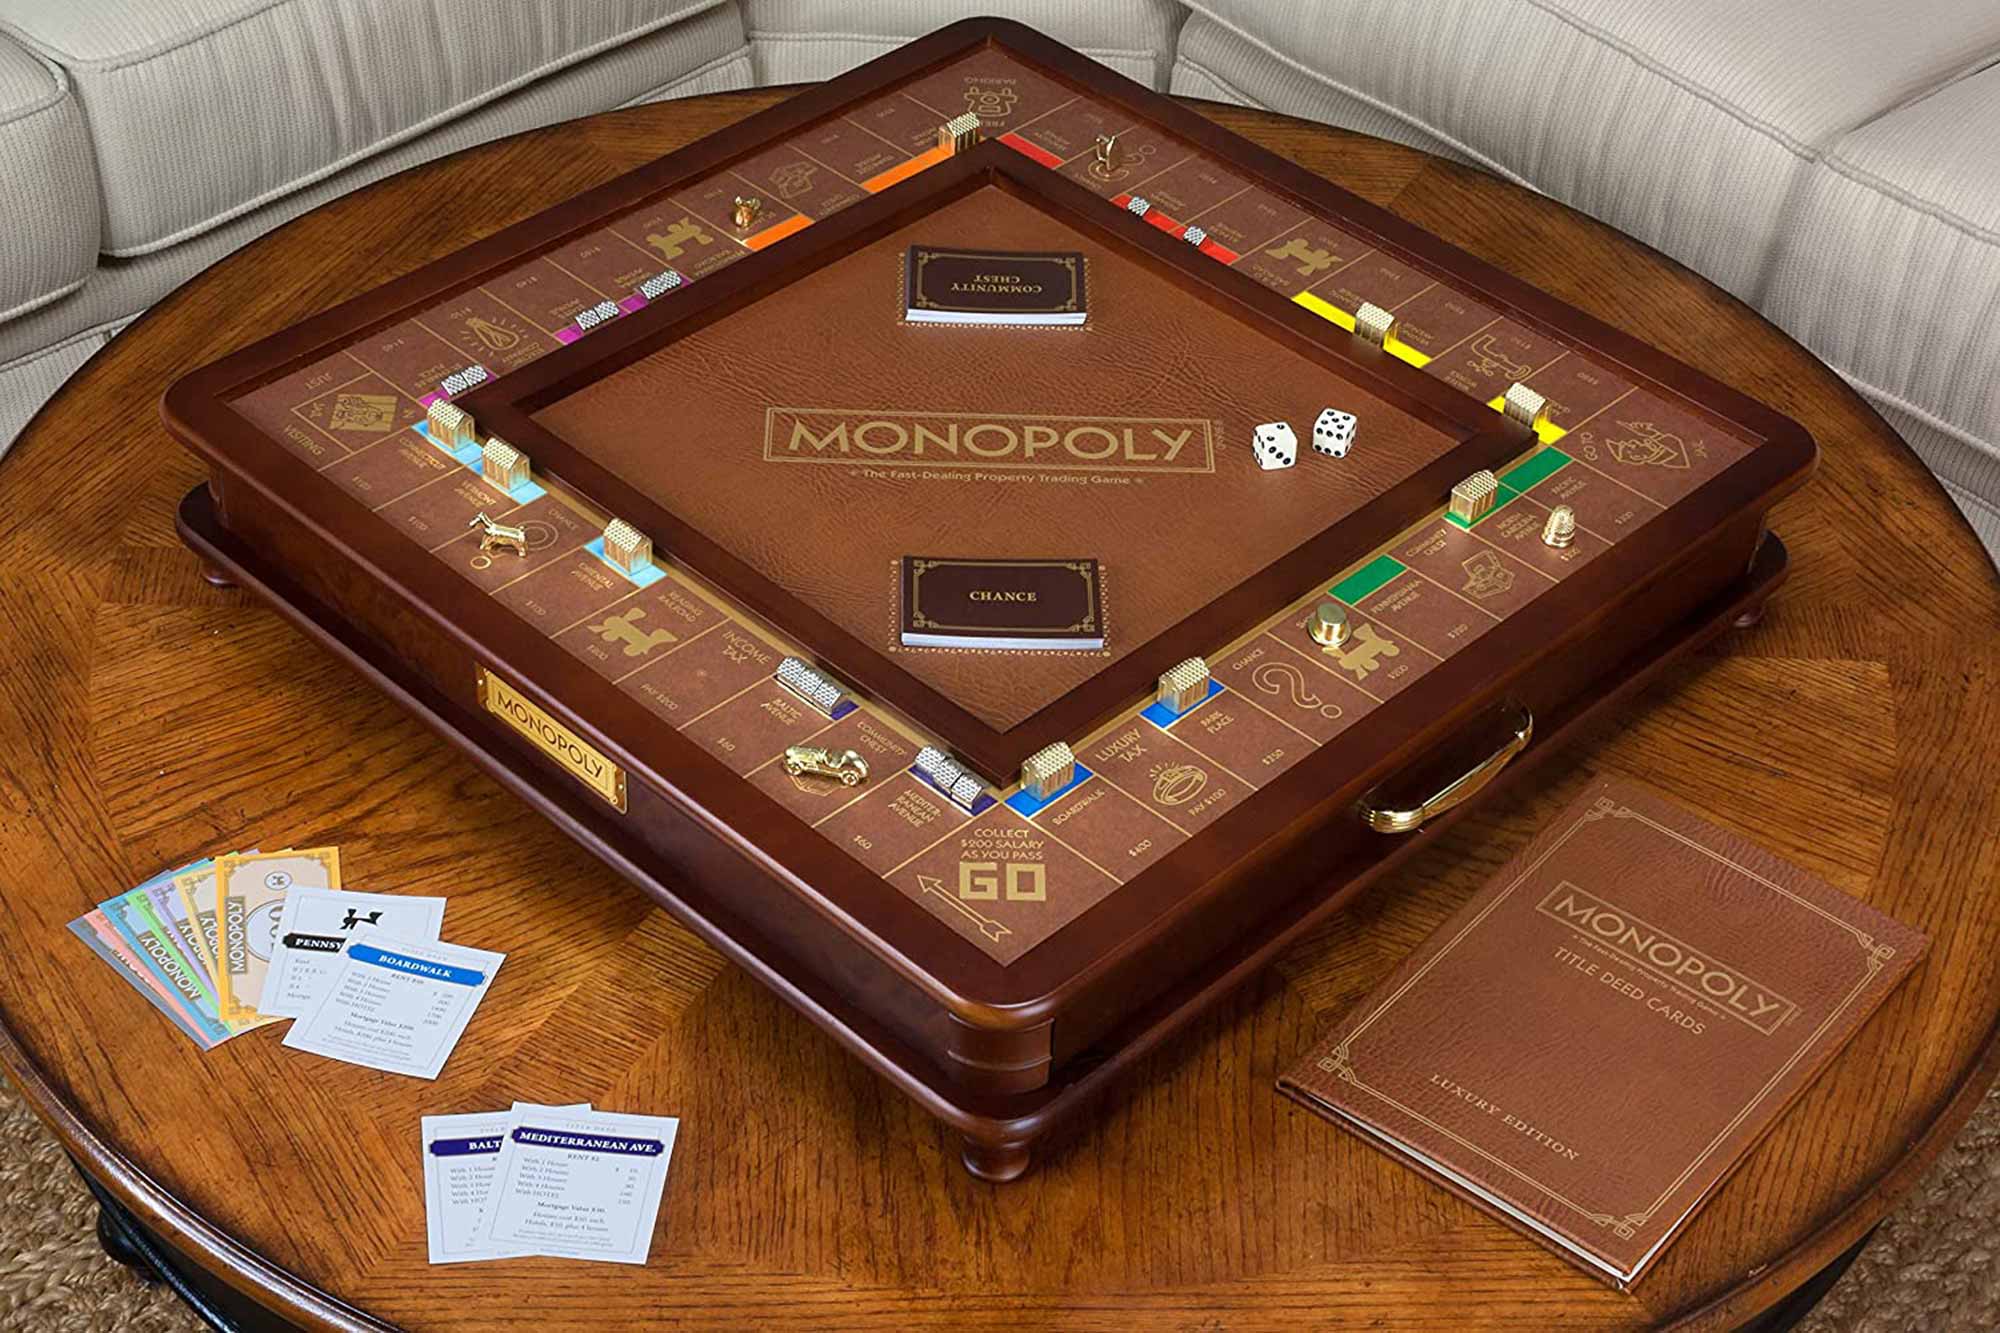 Monopoly de madeira e couro, edição de luxo é lançada nos EUA